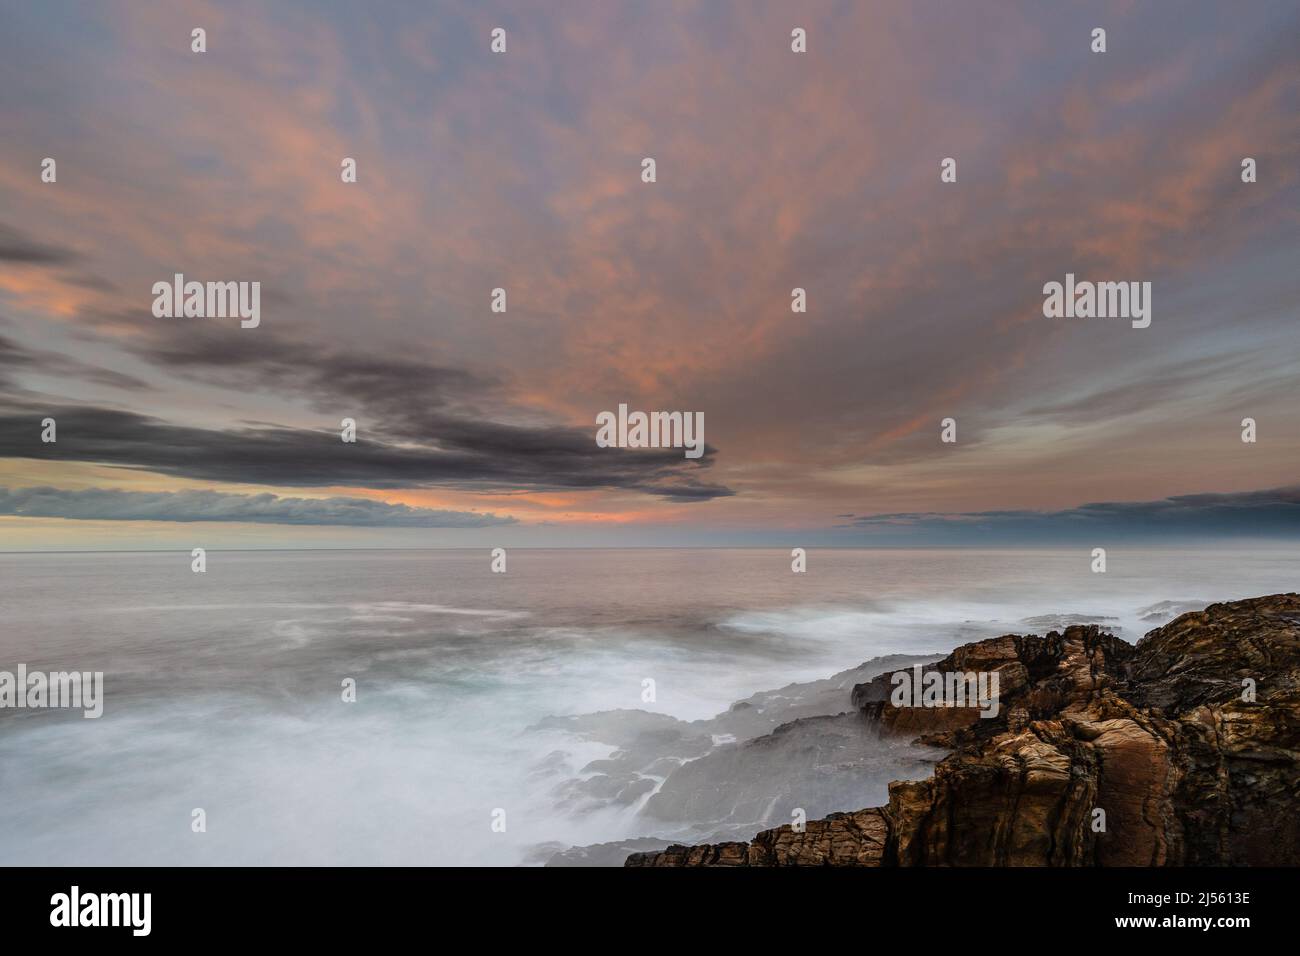 Espectacular y colorida puesta de sol en la costa de Asturias con un faro como protagonista Foto de stock